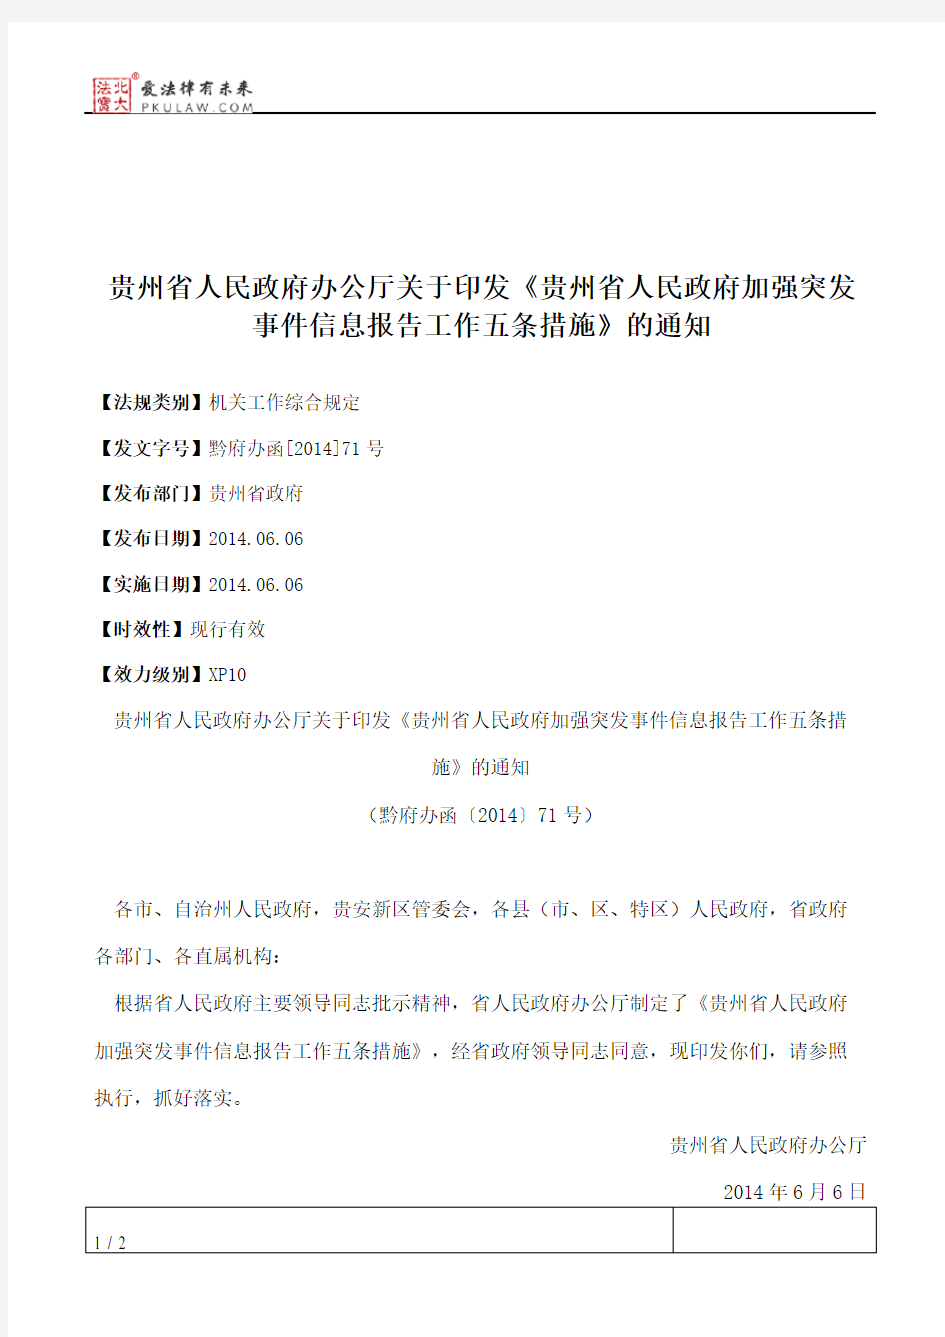 贵州省人民政府办公厅关于印发《贵州省人民政府加强突发事件信息